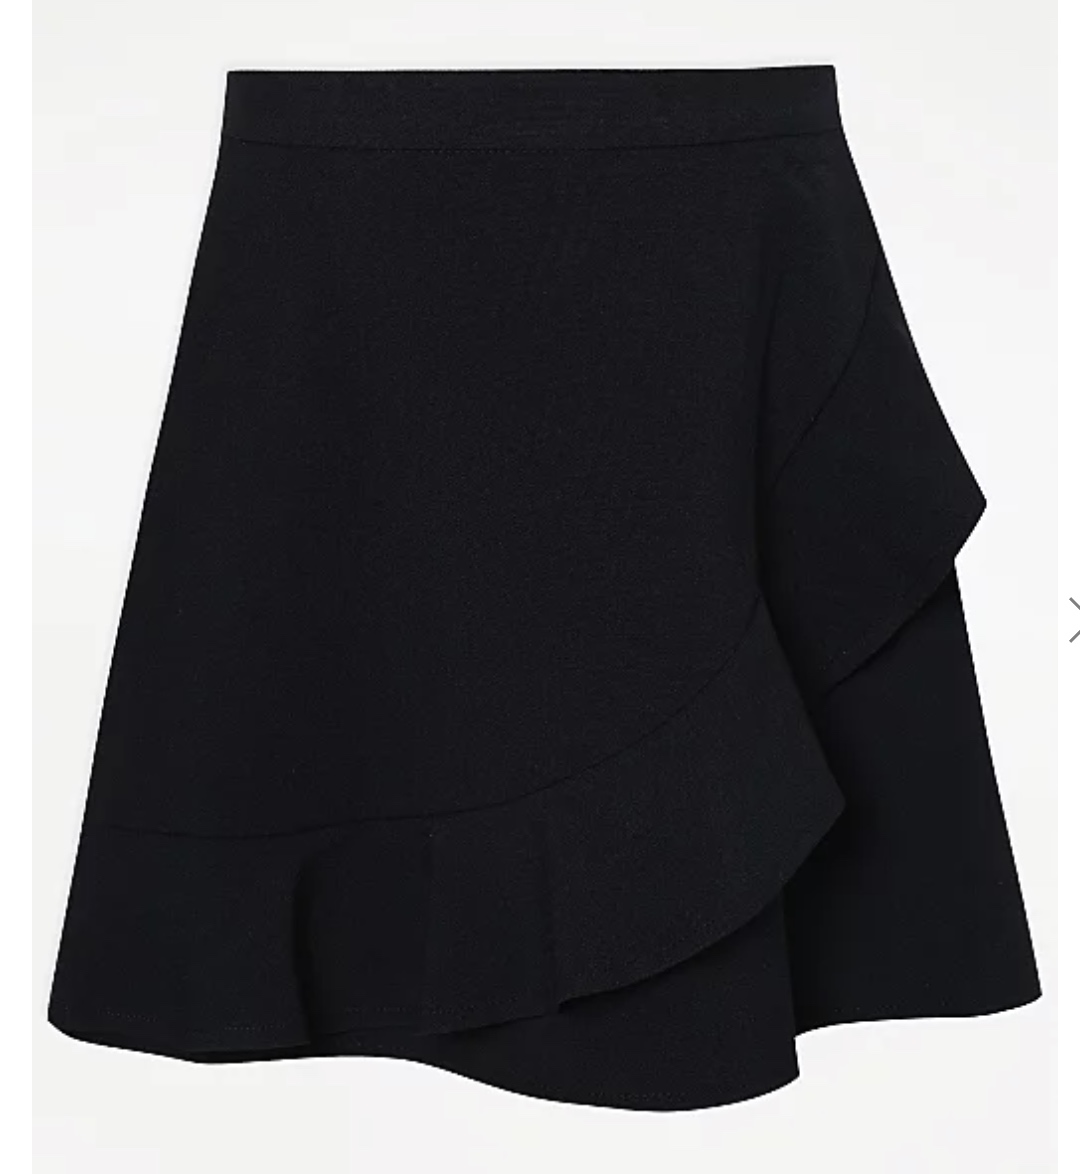 Girls' Navy Blue Frill A-Line Skirt, Elasticated Waist 6-7 Y